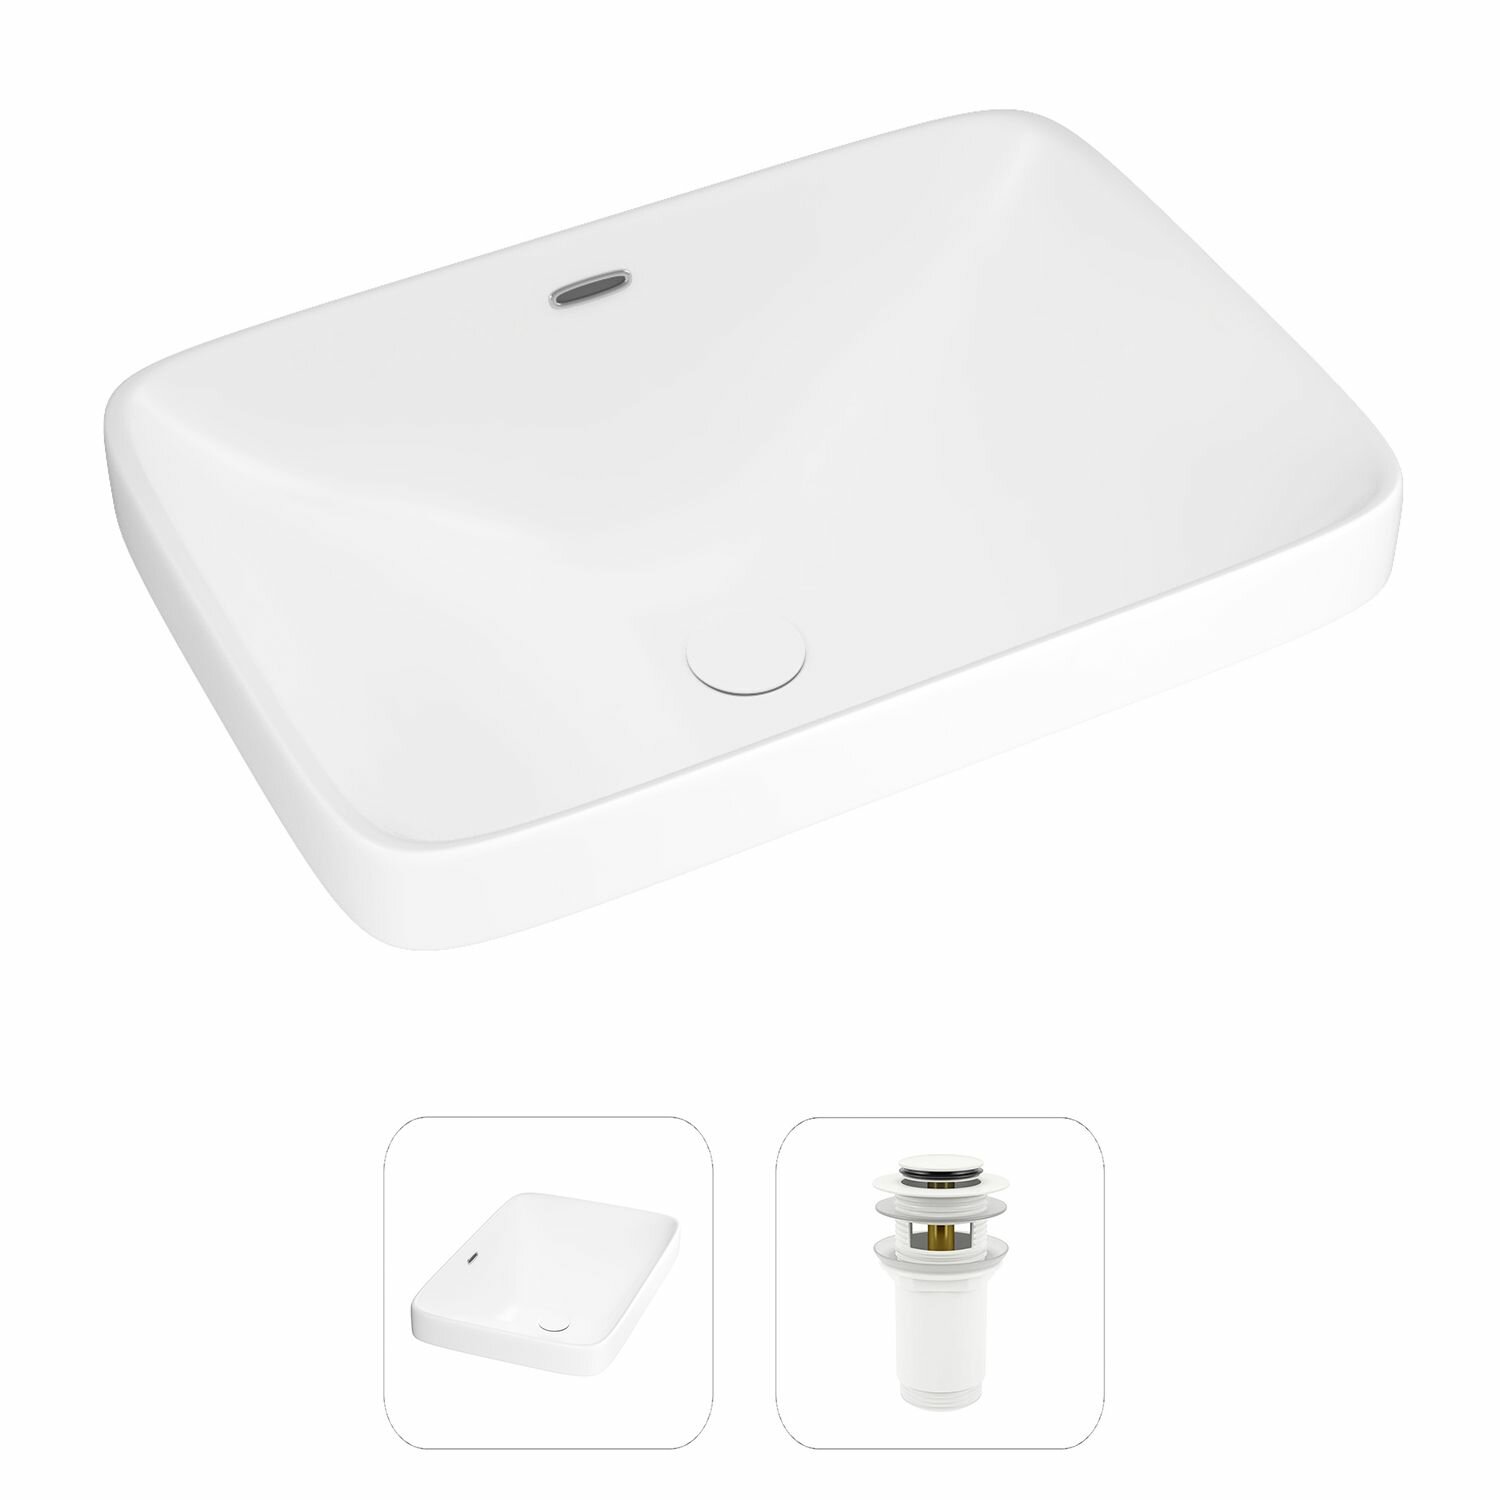 Встраиваемая раковина в ванную Helmken 44156000 комплект 2 в 1: умывальник прямоугольный 56 см, донный клапан click-clack в цвете белый